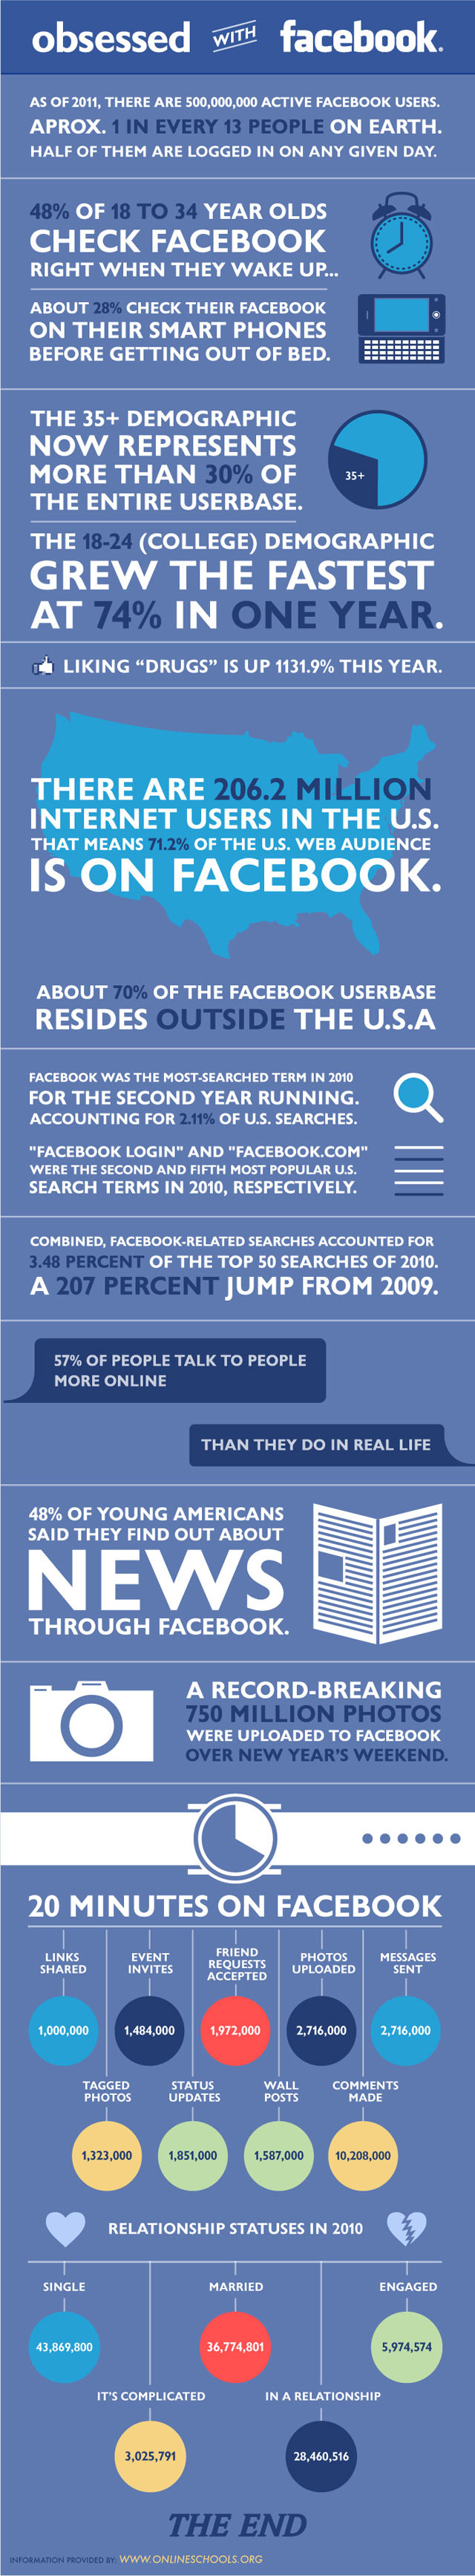 Etes-vous obsédé par Facebook?